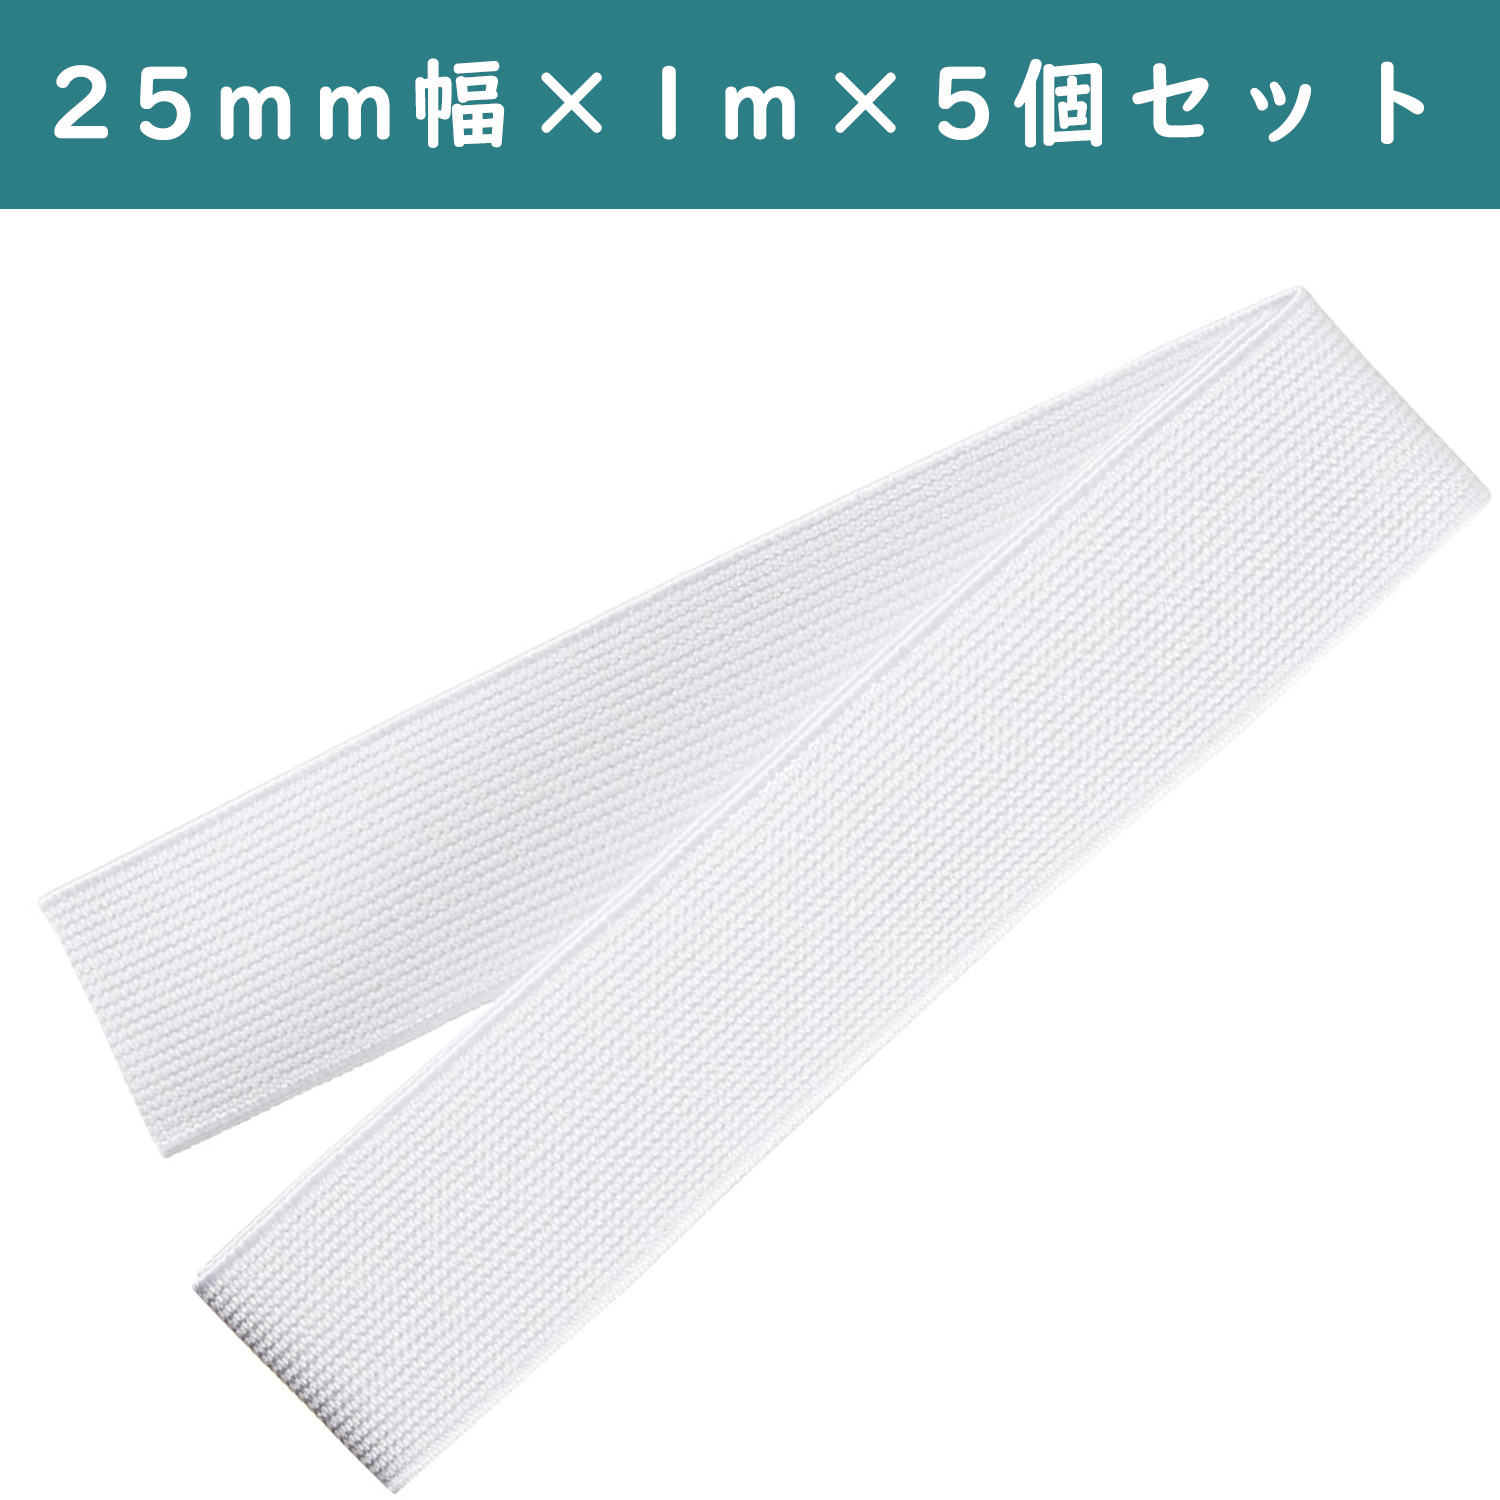 ■【5個】CL26-041-5set ゴムベルト 25mm幅 白 ×5個 (セット)